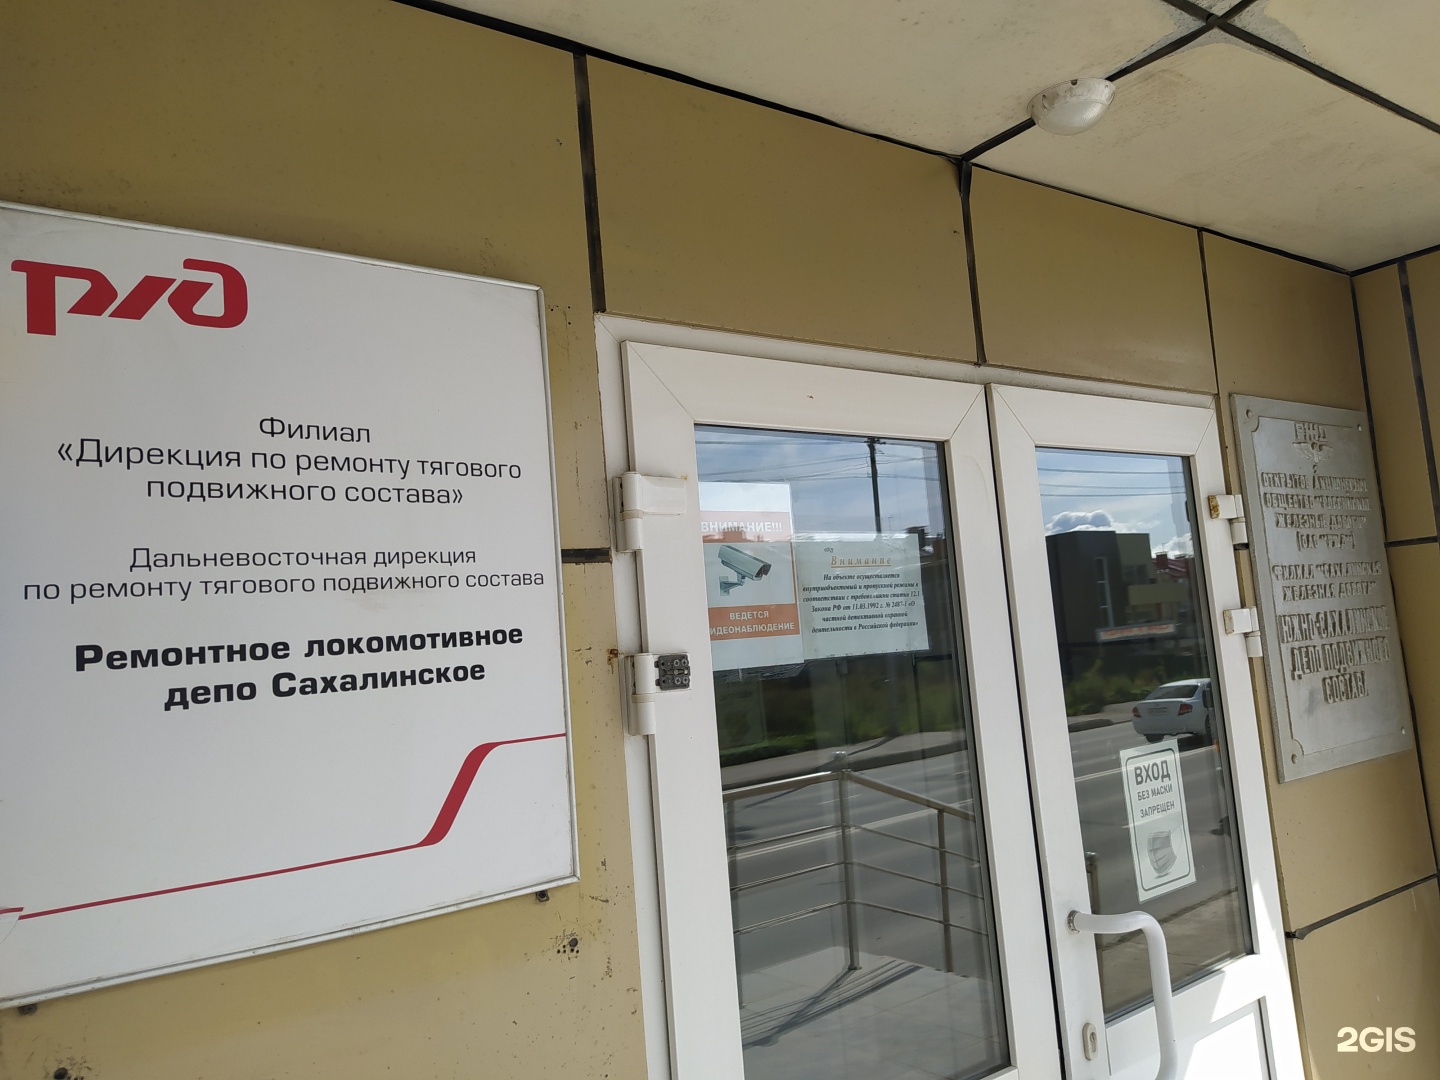 пенсионный фонд южно сахалинск телефоны стол справок